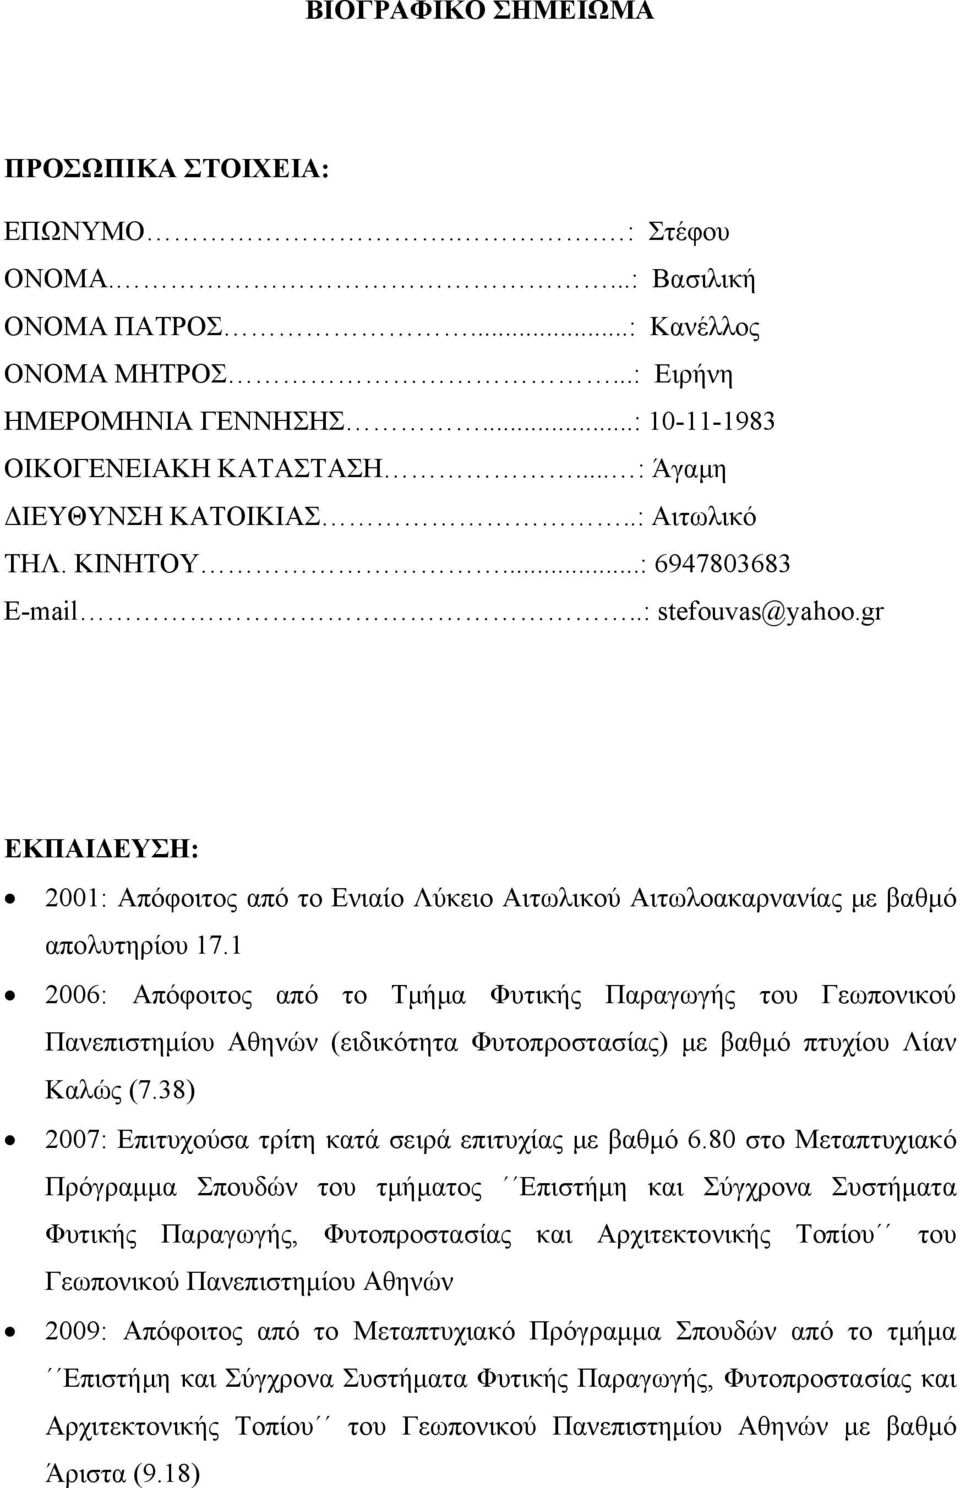 1 2006: Απόφοιτος από το Τμήμα Φυτικής Παραγωγής του Γεωπονικού Πανεπιστημίου Αθηνών (ειδικότητα Φυτοπροστασίας) με βαθμό πτυχίου Λίαν Καλώς (7.